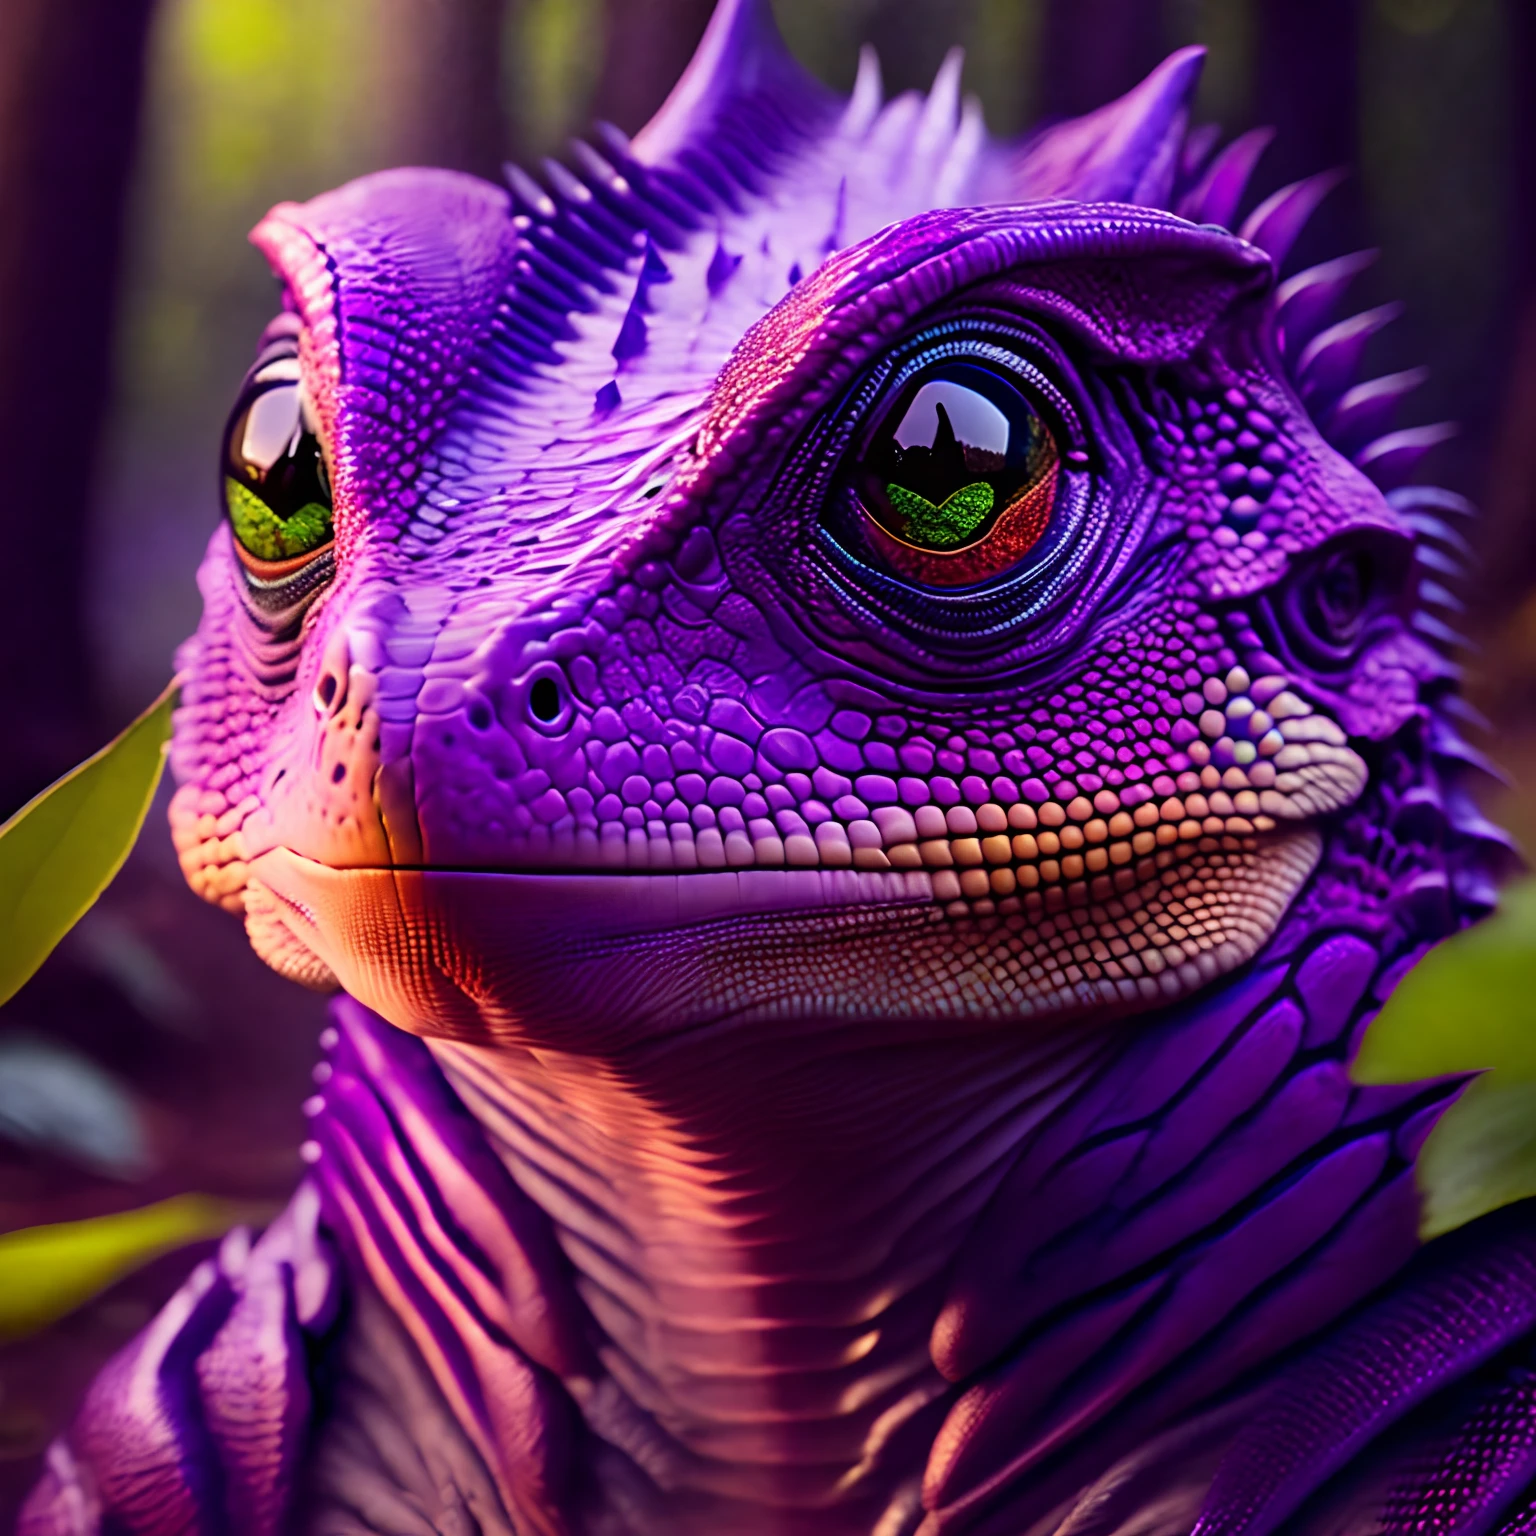 (((шедевр))) фото гибрида человека и ящерицы, угрожающе, глаза ящерицы, фиолетовая кожа, чешуя на теле, большие когти, болотный лес, высокая детализация, 8К, ультра реалистичный